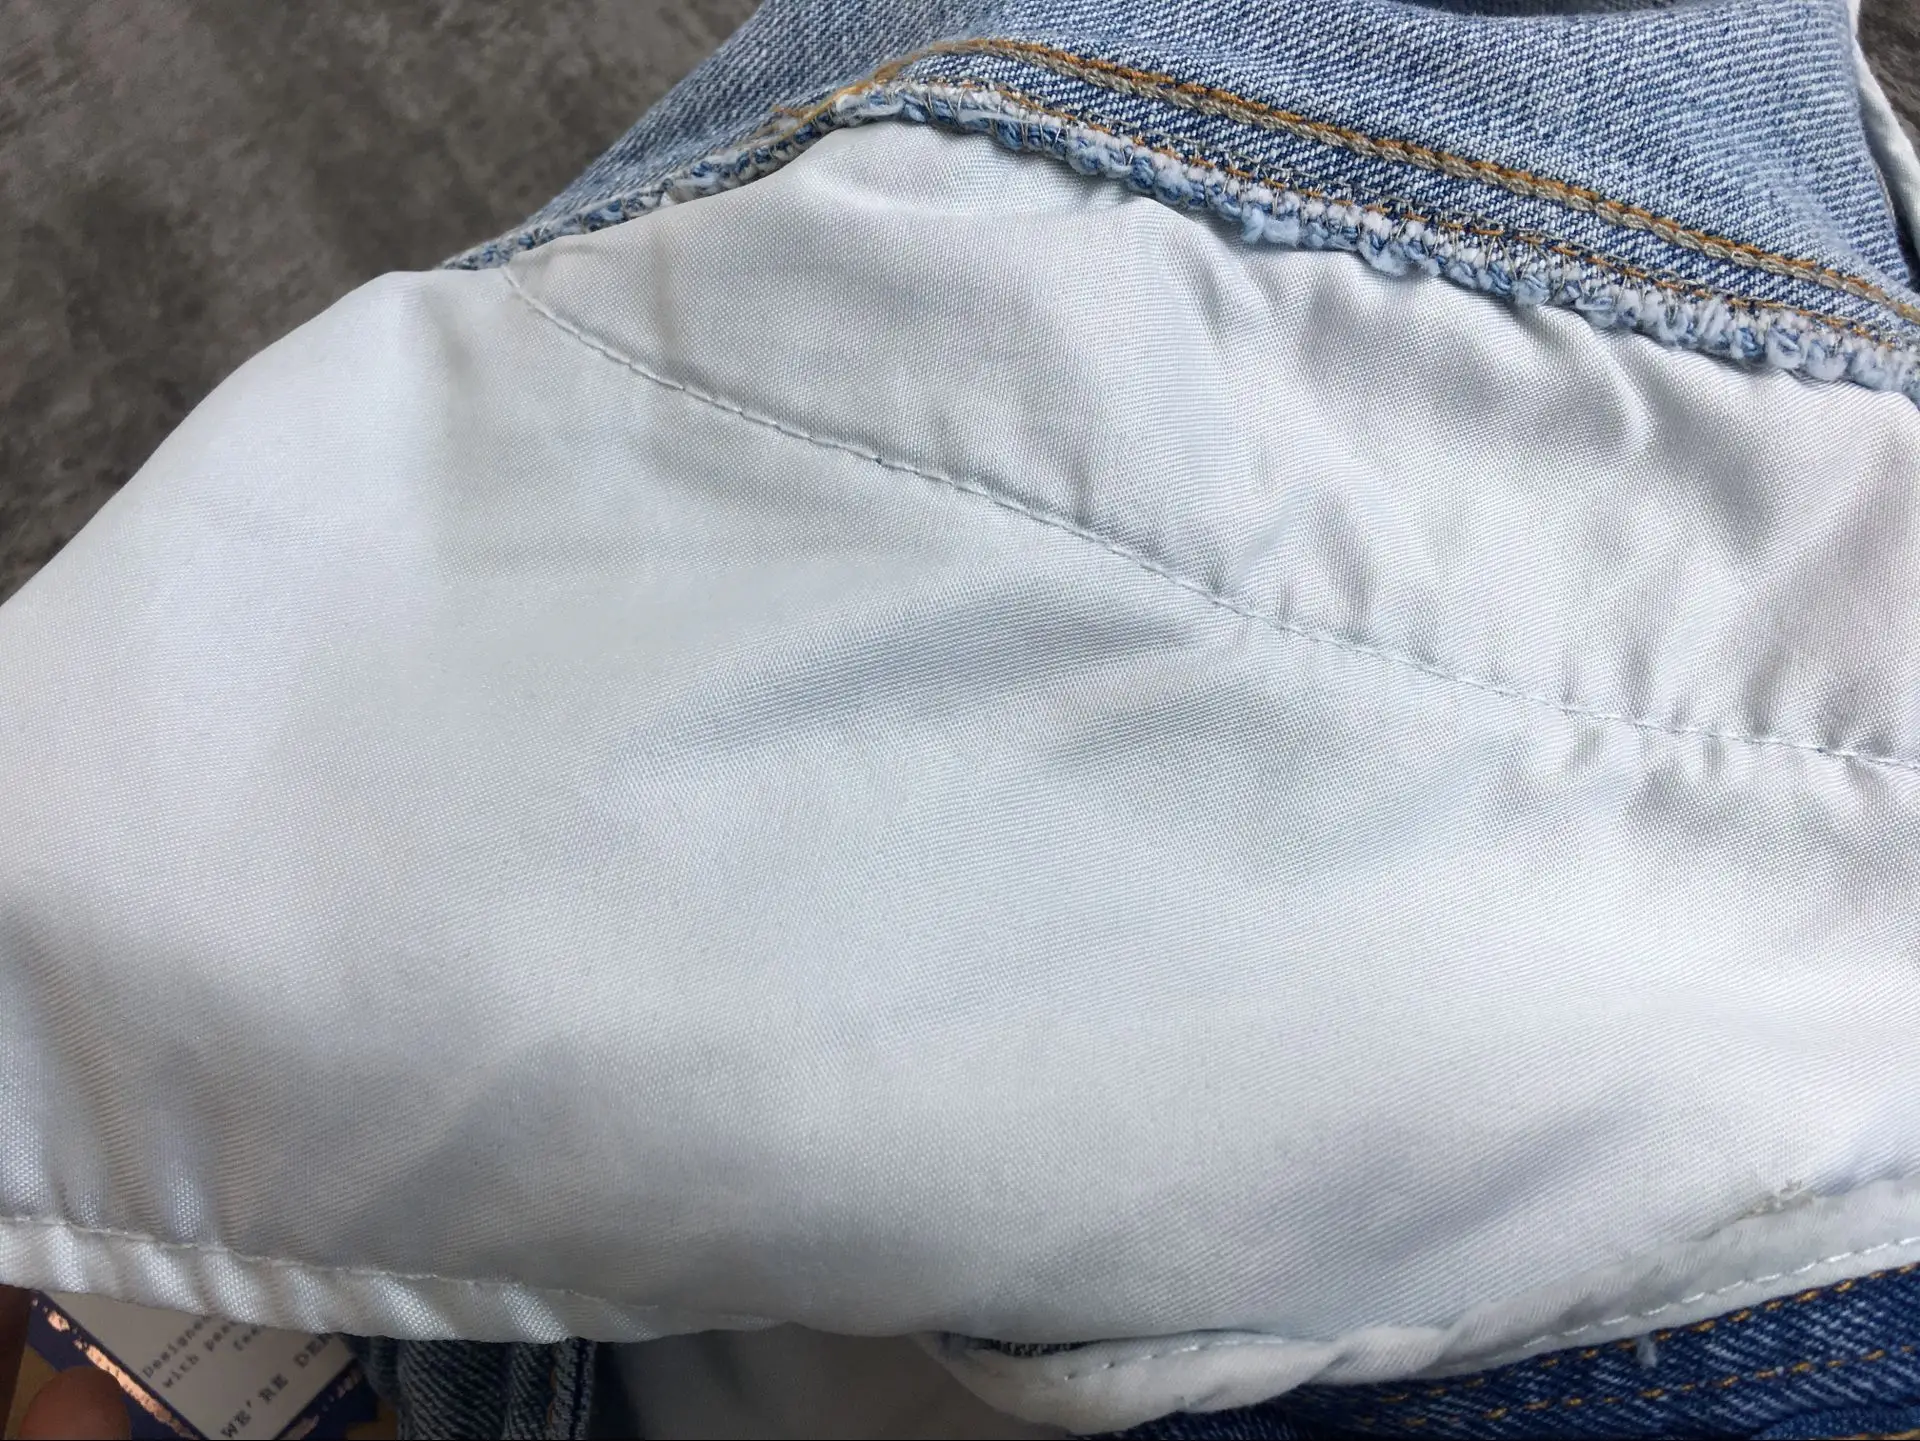 Новая одежда Высокая талия Досуг свободные широкие ноги Потертая джинсовая ткань специальный крой и Осень-зима женские брюки девять минут